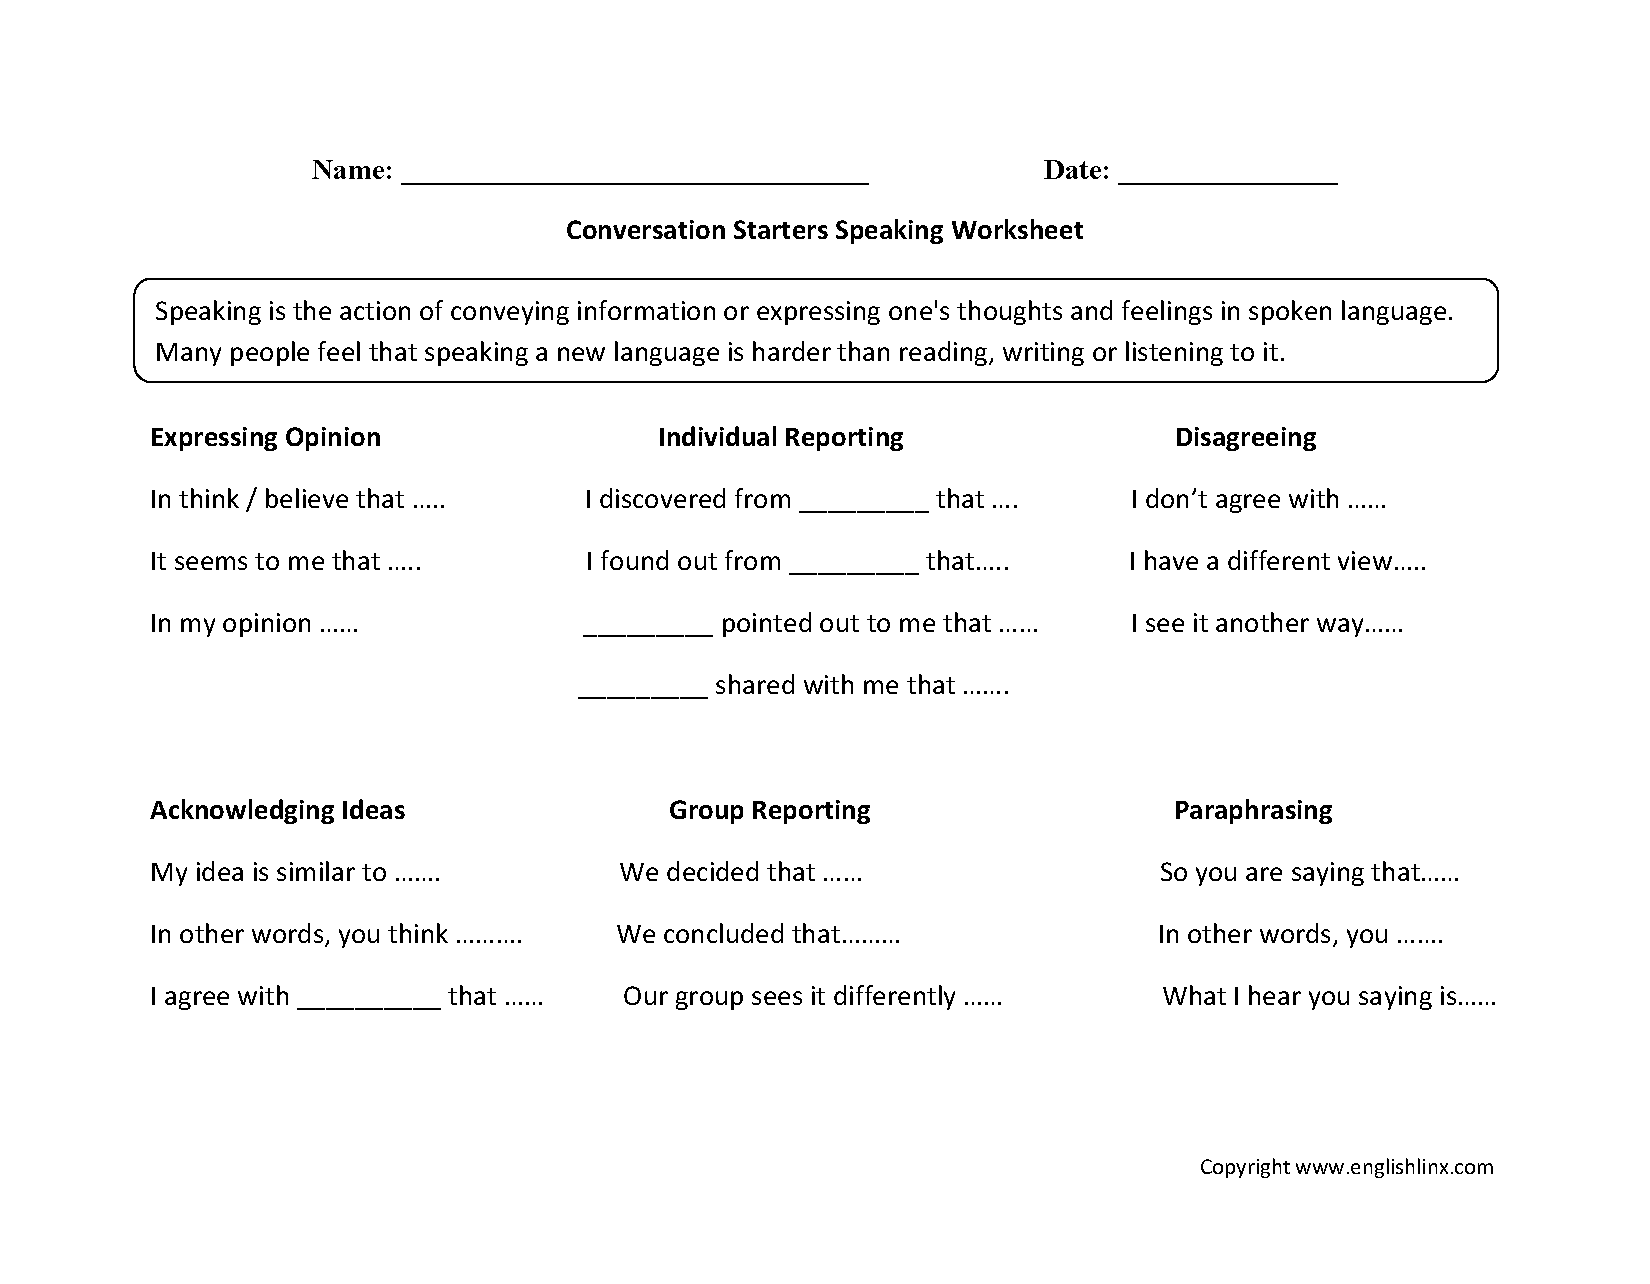 speaking-worksheets-conversation-speaking-worksheets